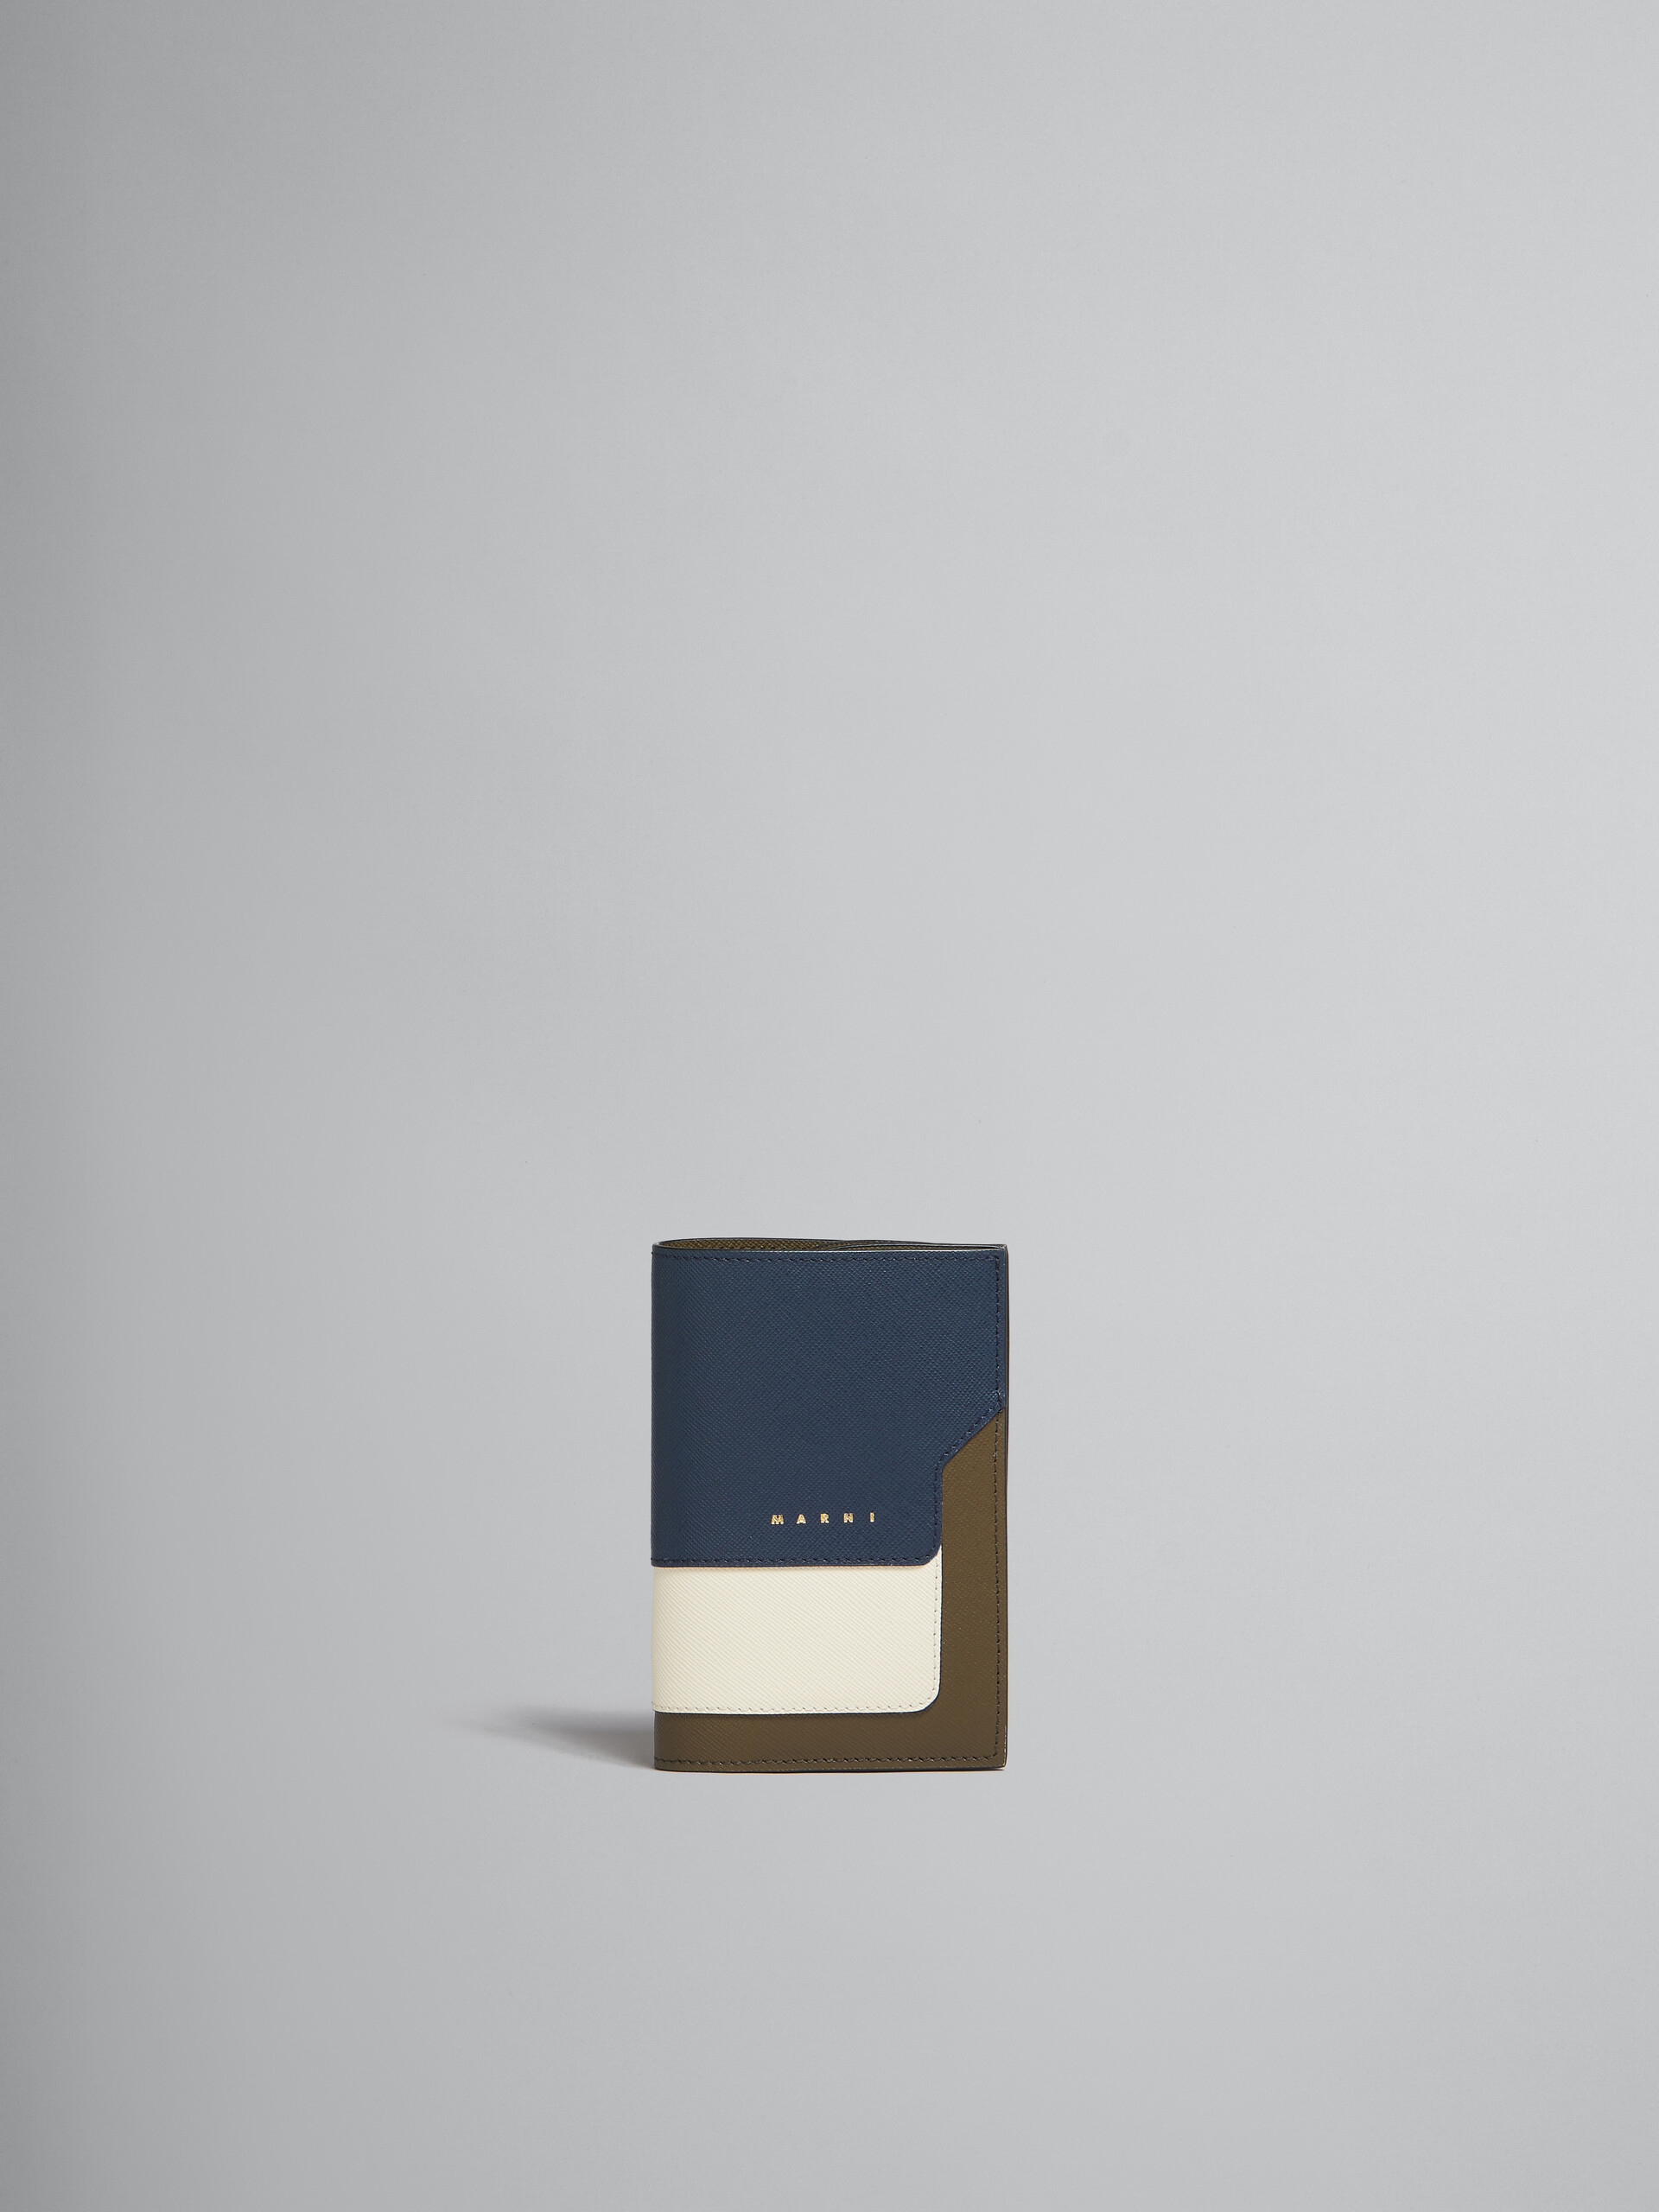 オレンジ クリーム ディープブルー サフィアーノレザー製 パスポート ホルダー - 財布 - Image 1